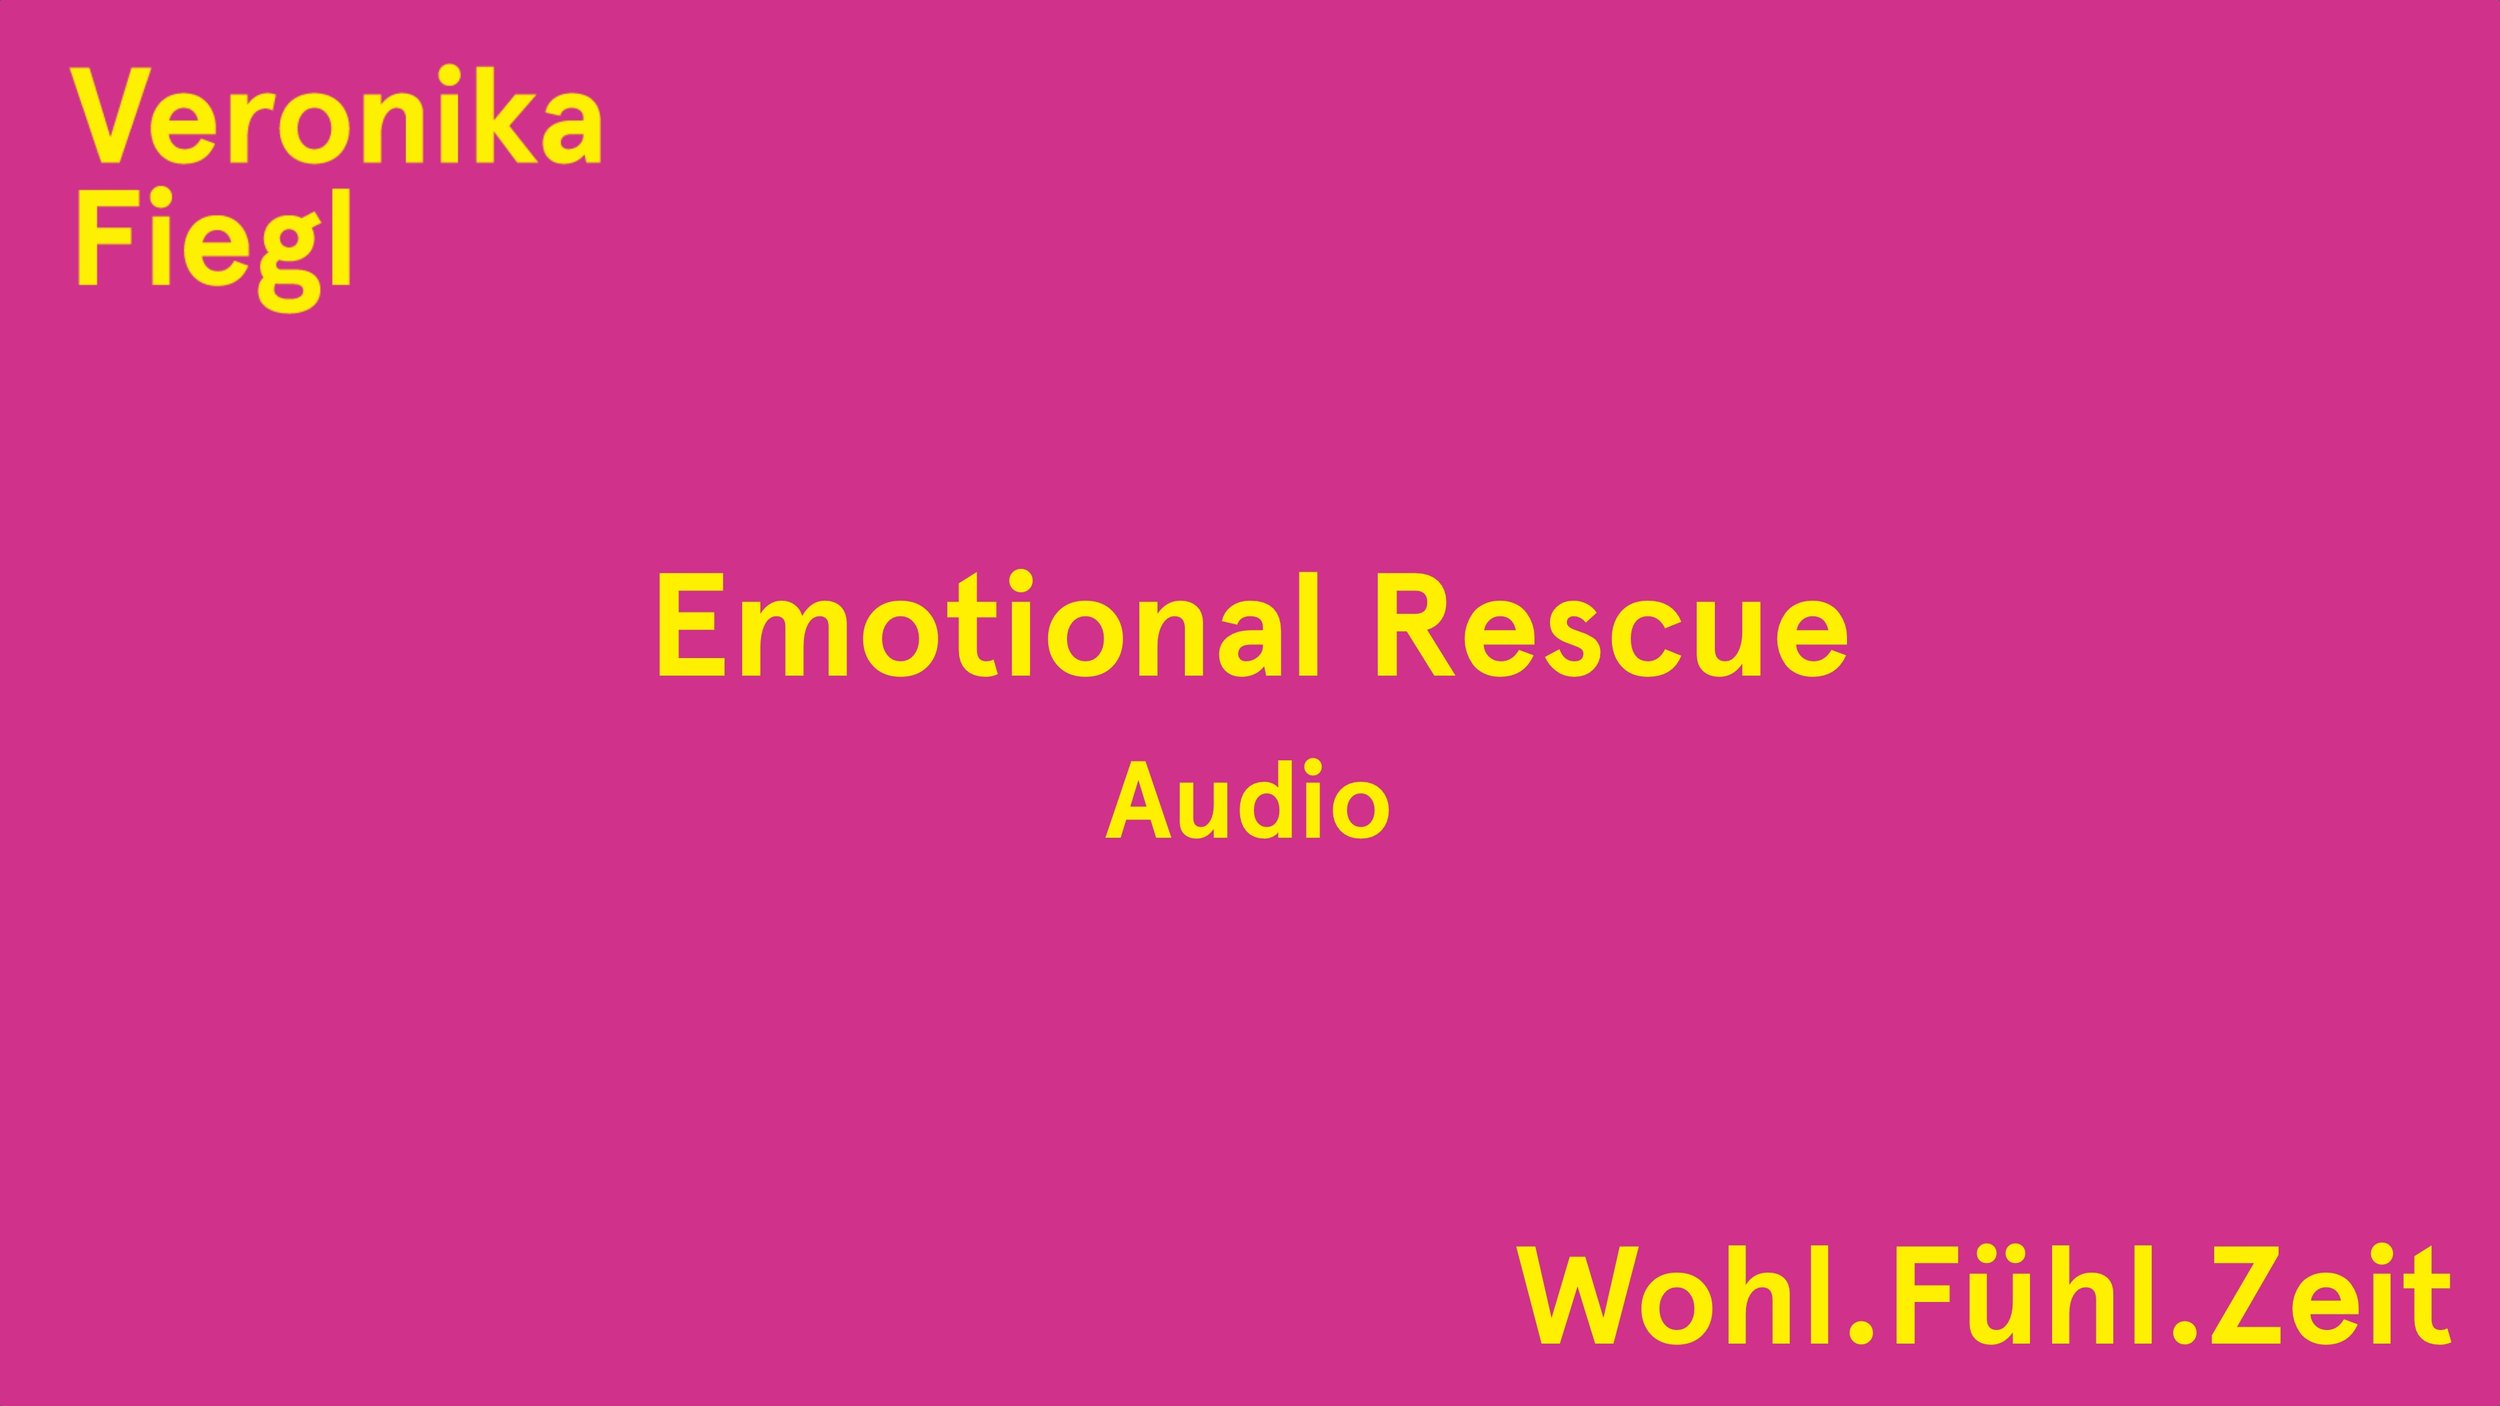 Audio Emotional Rescue (6:26)